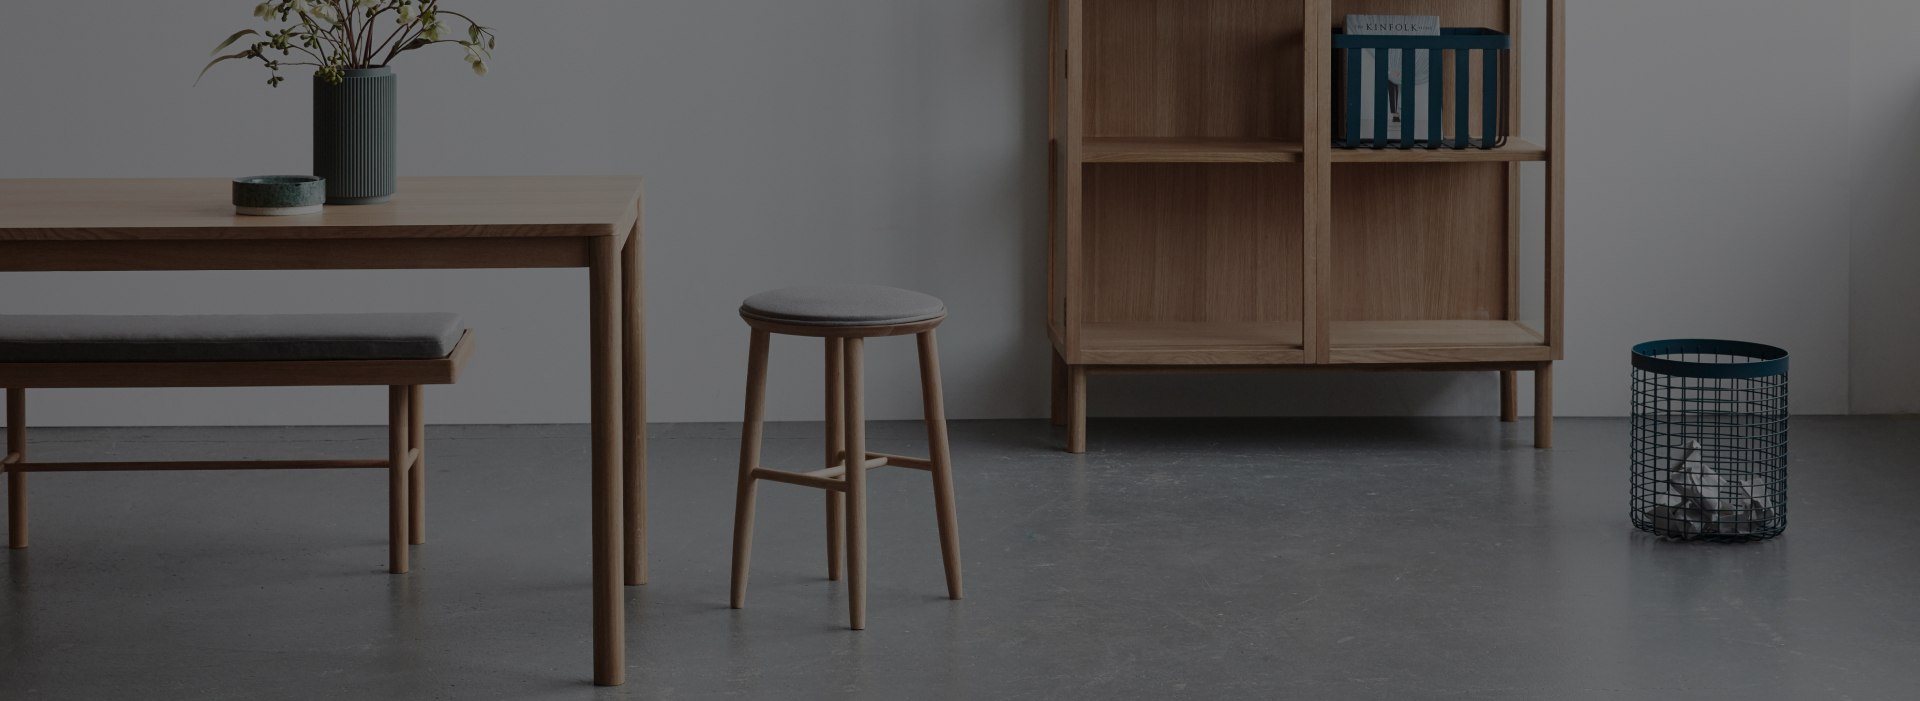 Hübsch mobilier en bois danois design épuré et lumineux